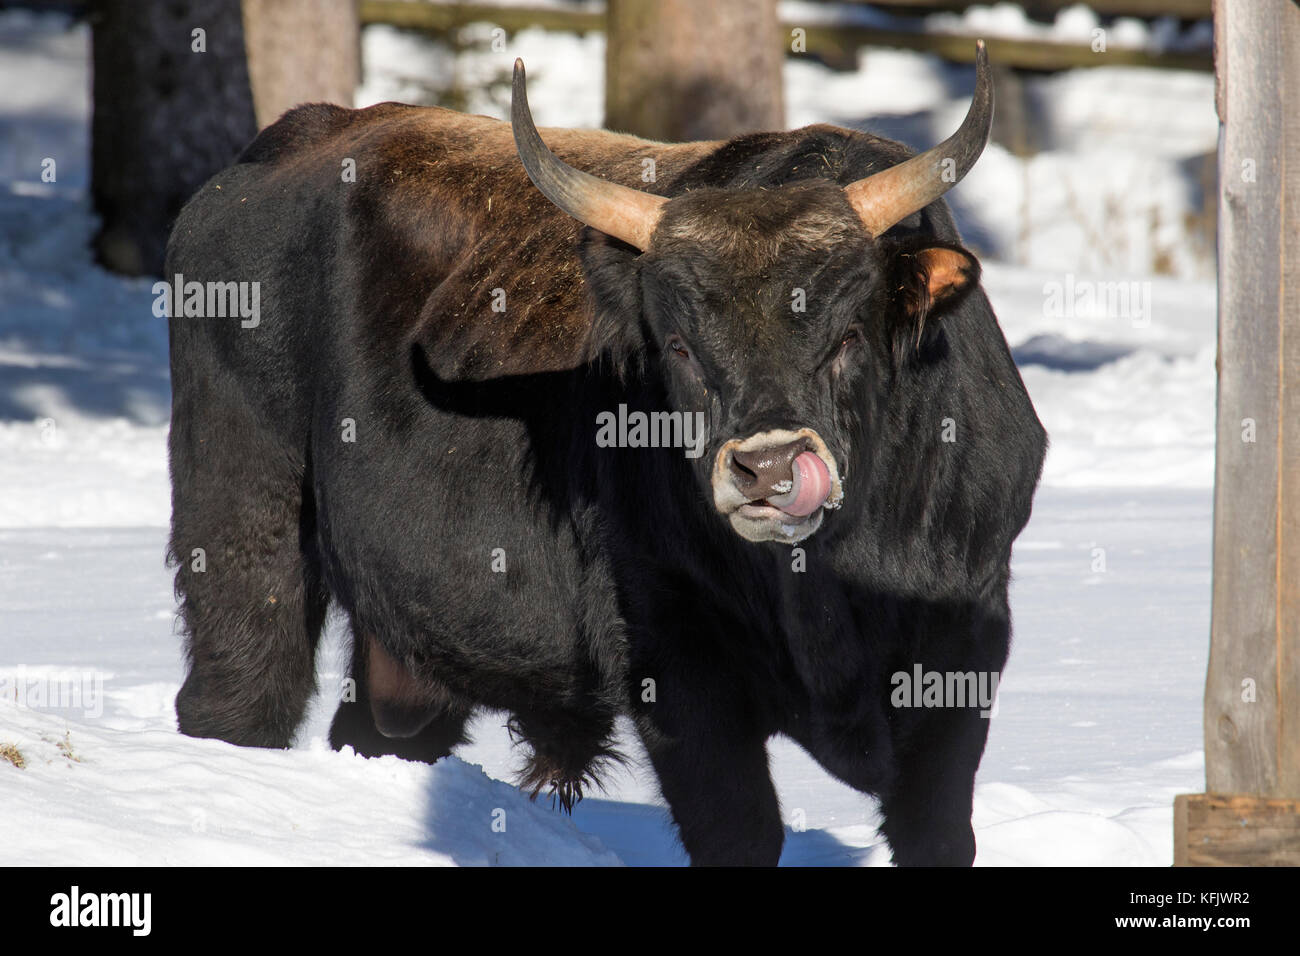 Heck bovins (Bos domesticus) bull léchant le nez dans la neige en hiver Banque D'Images